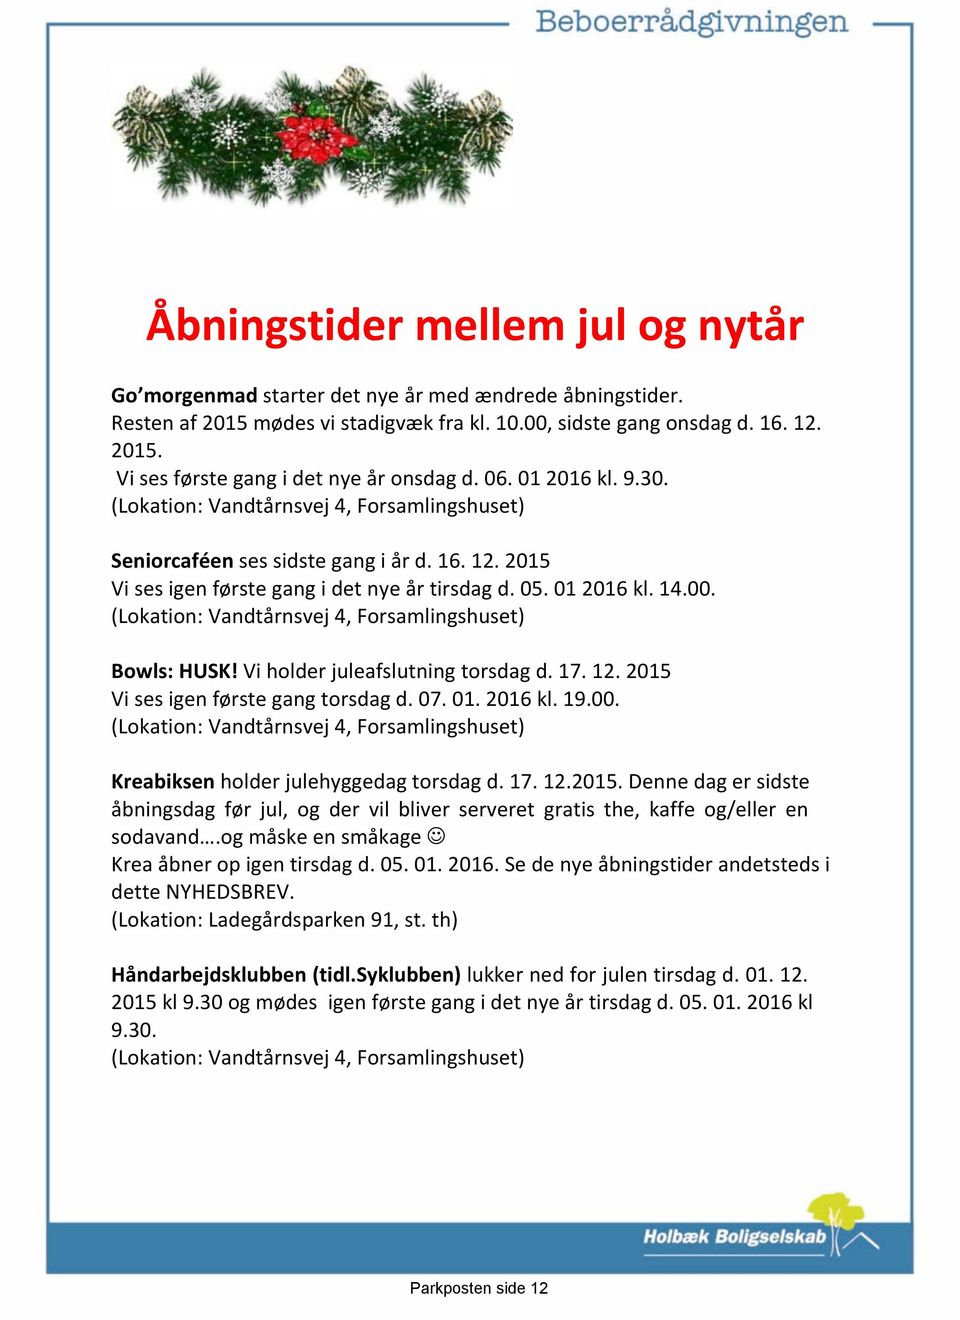 (Lokation: Vandtårnsvej 4, Forsamlingshuset) Bowls: HUSK! Vi holder juleafslutning torsdag d. 17. 12. 2015 Vi ses igen første gang torsdag d. 07. 01. 2016 kl. 19.00.